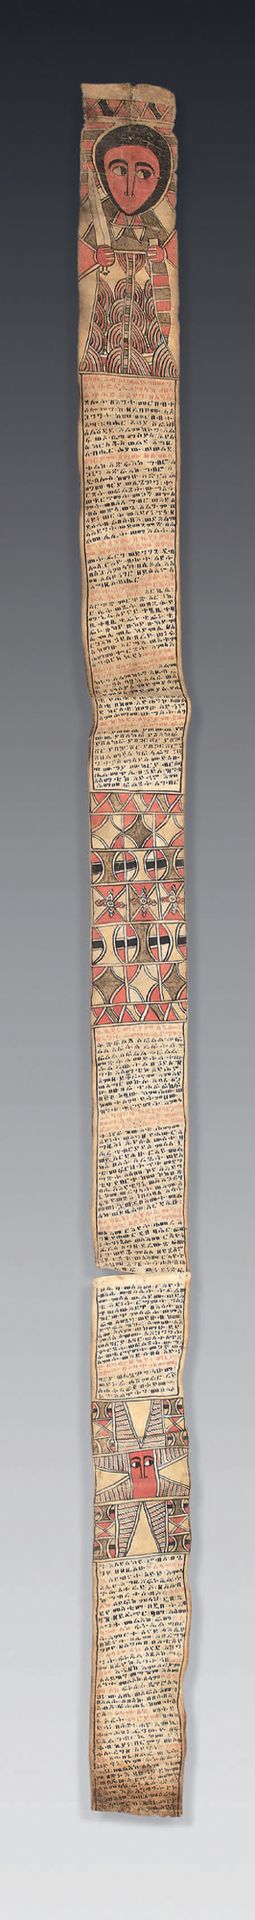 Null Rollo de talismán etíope
Pigmentos policromos sobre papel.
Etiopía, pueblo &hellip;